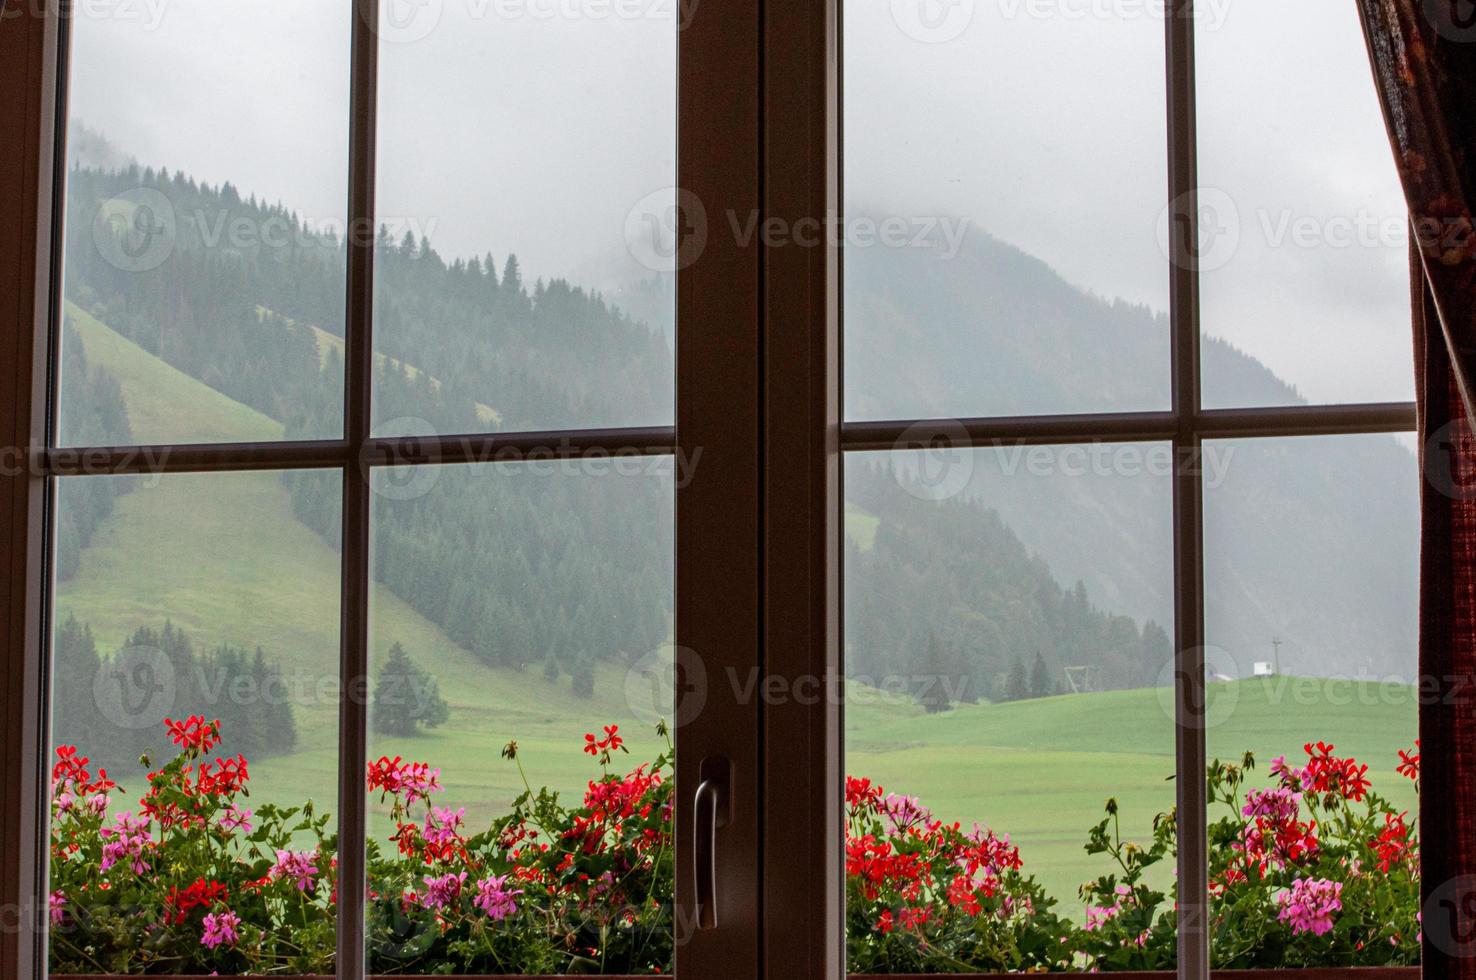 vue de la fenêtre de belles fleurs sur le rebord et les montagnes boisées un jour brumeux photo